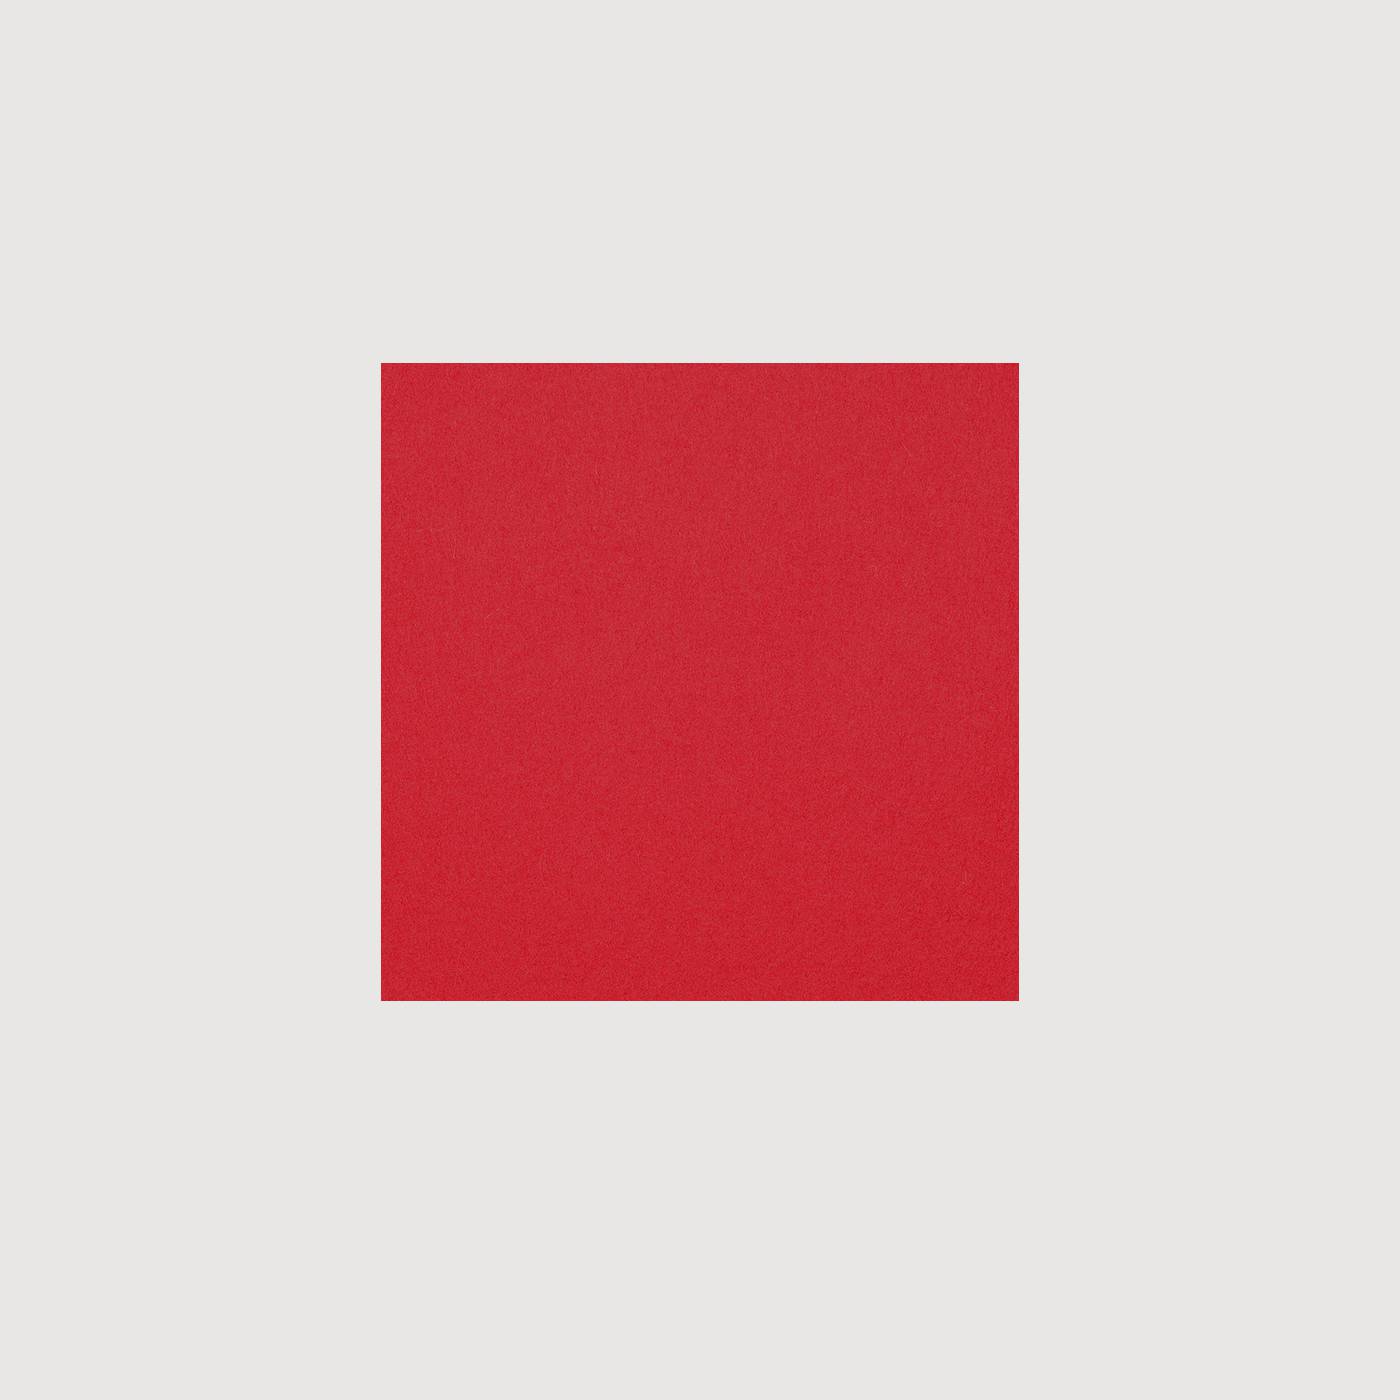 Сайт красный квадрат. Красный квадрат. Квадрат картинка. Красный и синий квадрат. Красный квадратик.